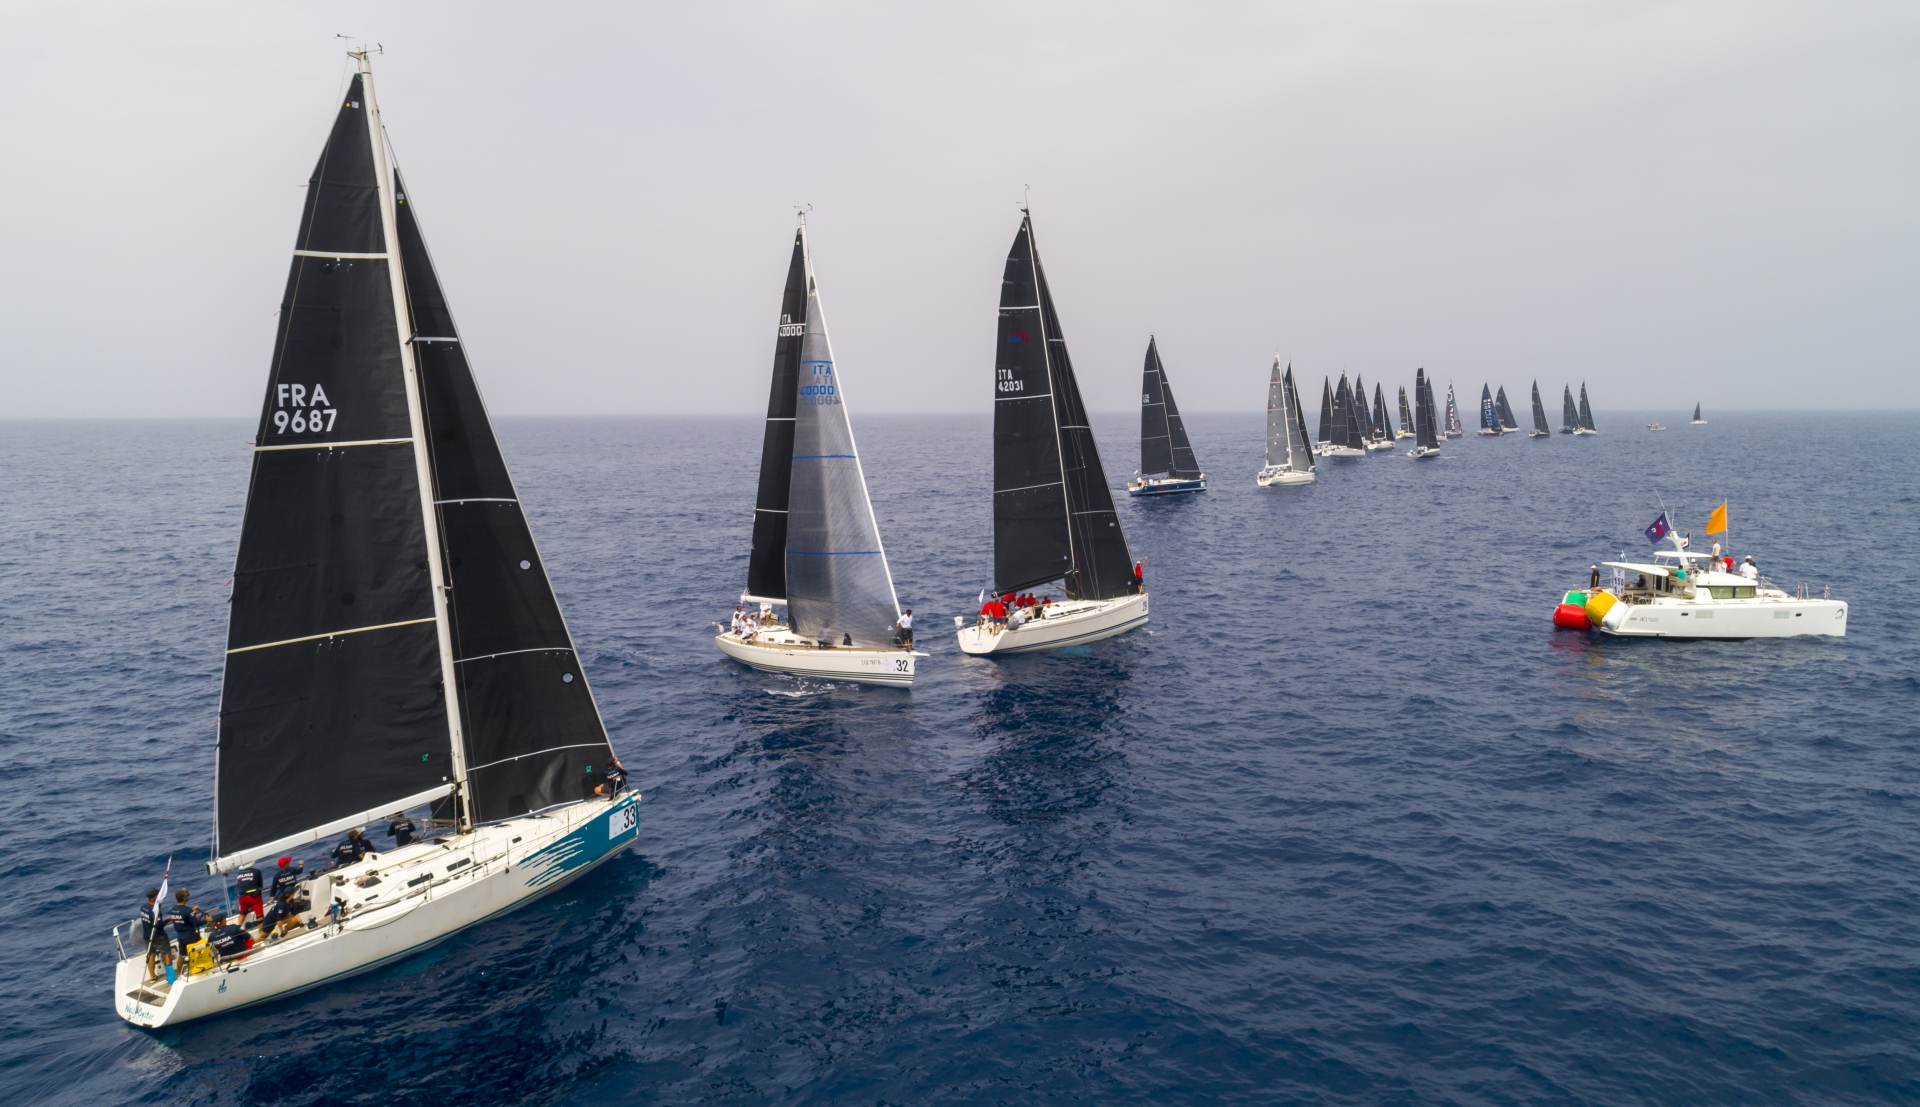 Vento instabile e leggero, regate del Mondiale ORC rimandate a domani - News - Yacht Club Costa Smeralda